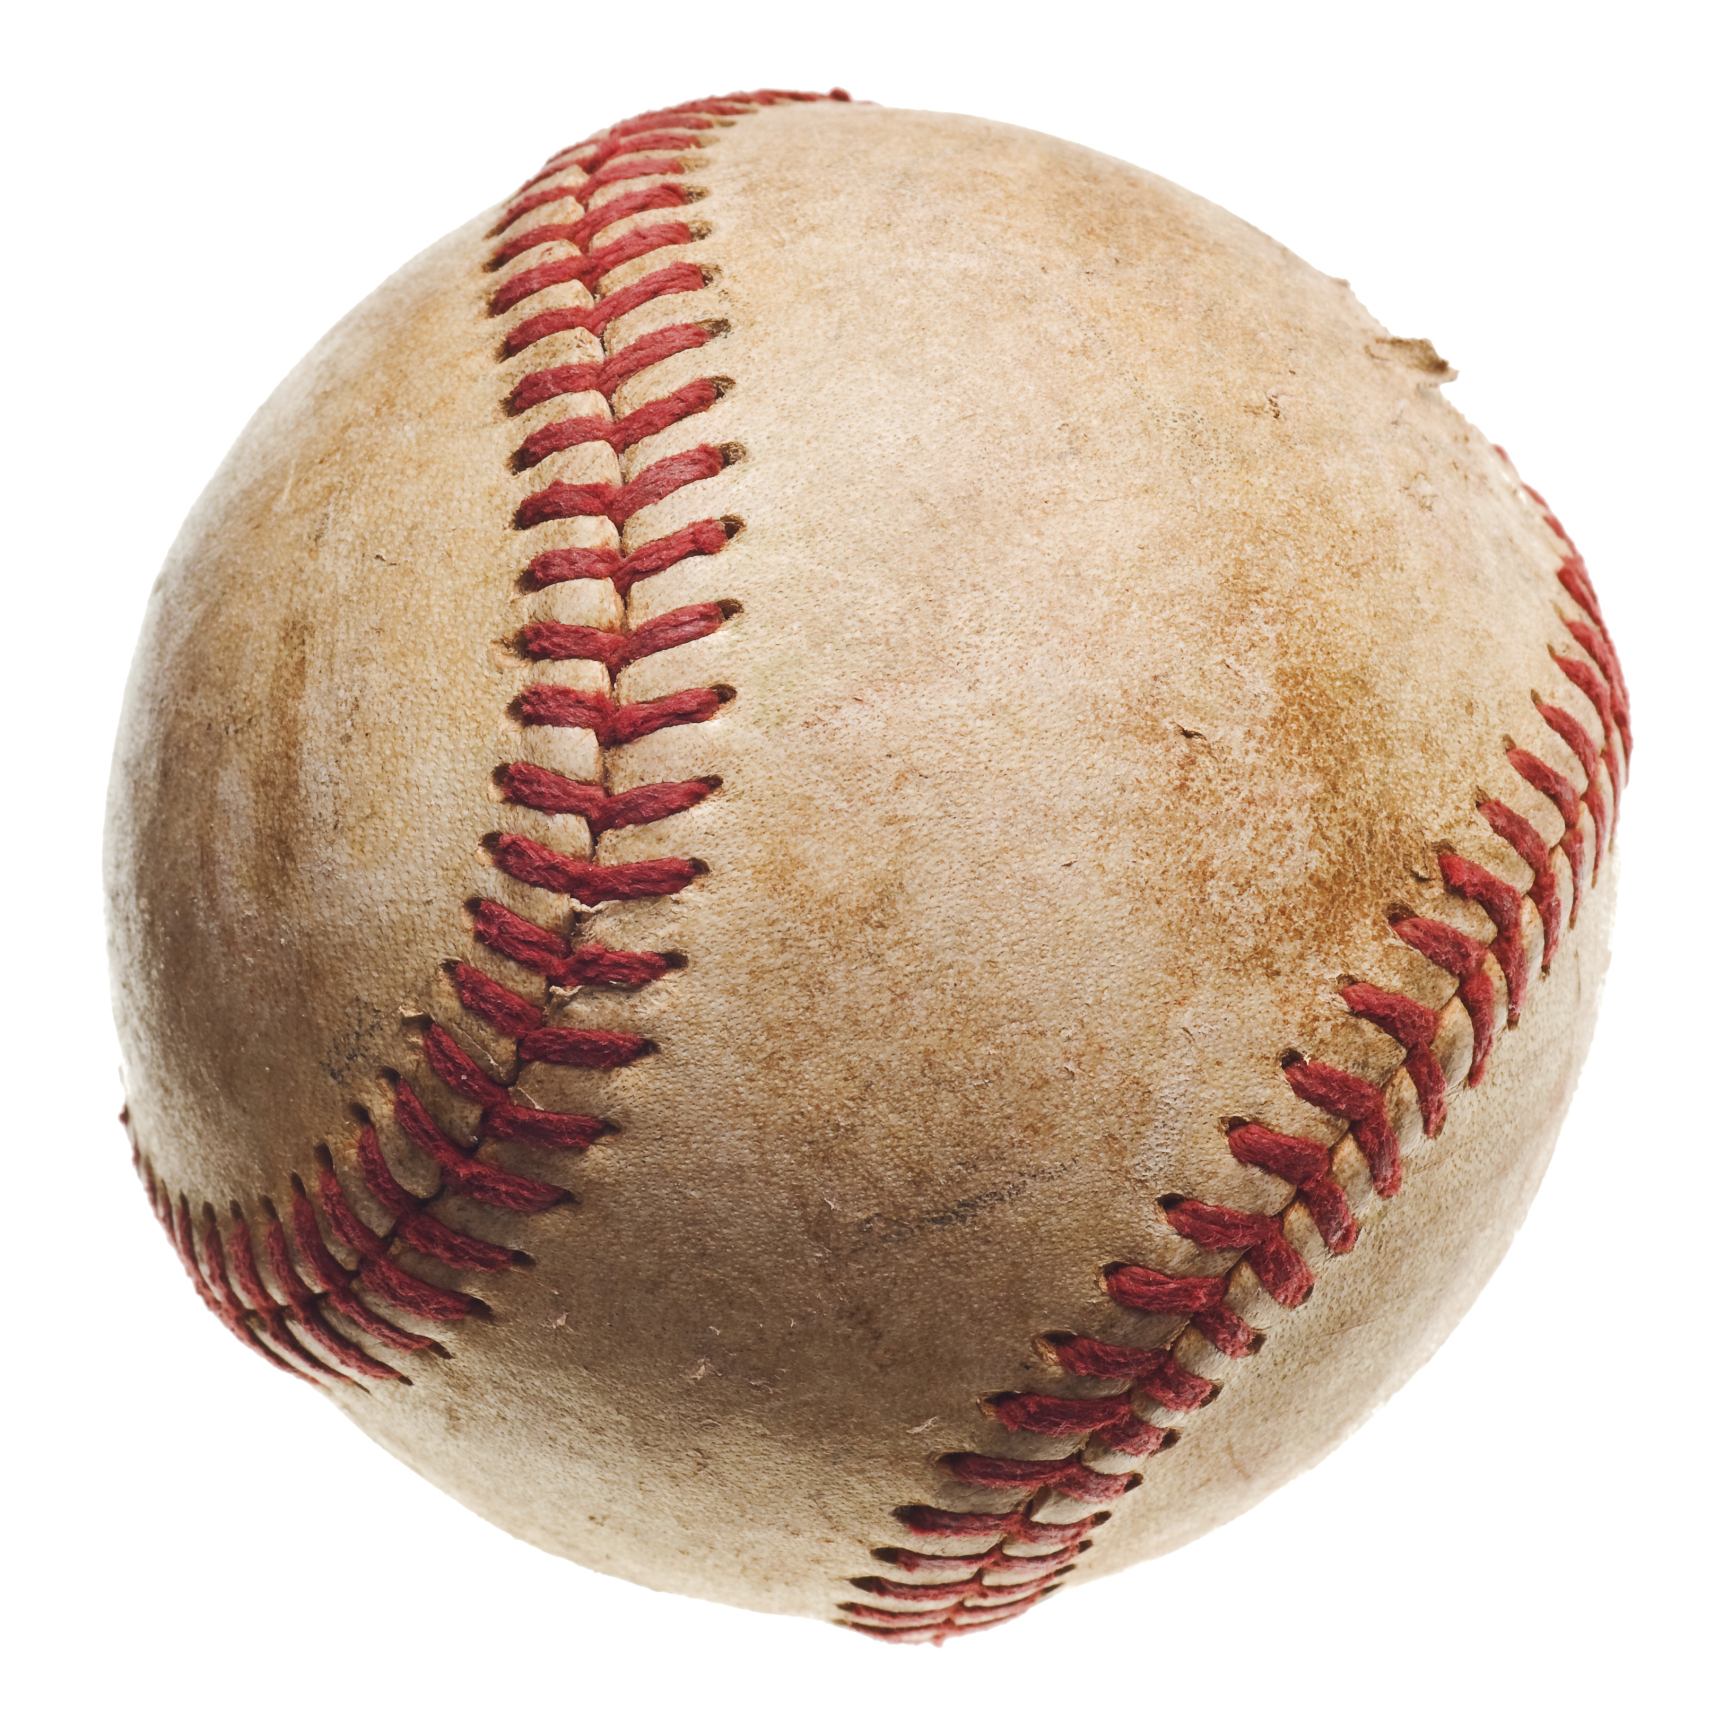 Baseball ball. Бейсбольный мячик. Бейсбольный мяч Эстетика. Старый бейсбольный мяч. Бейсбольный мяч арт.